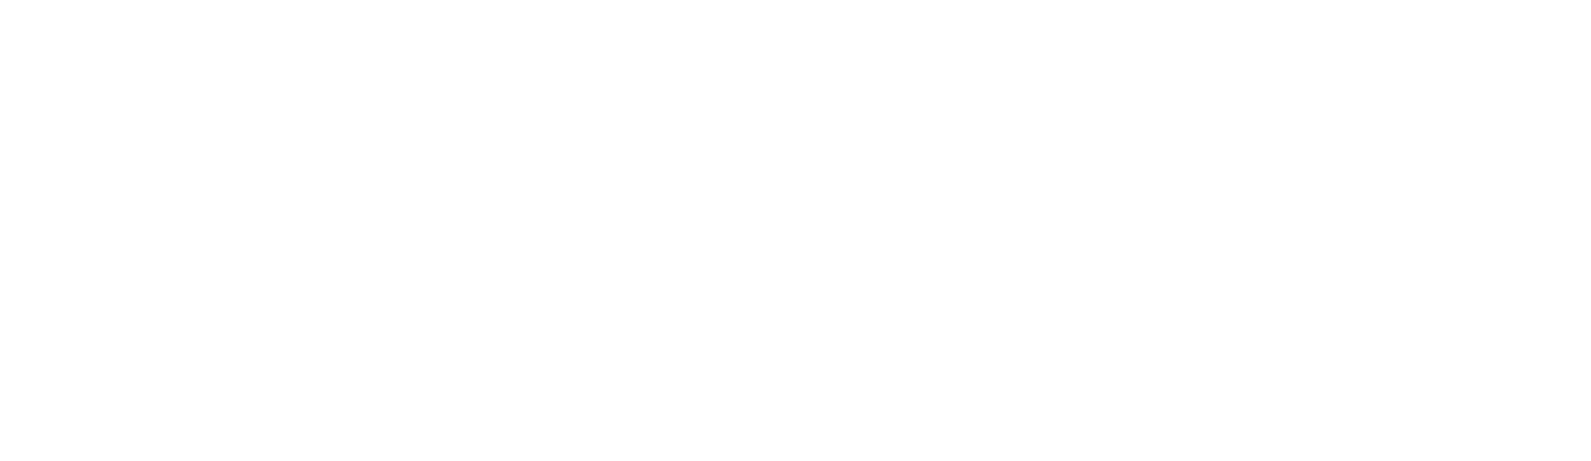 Hargreaves Lansdown logo large for dark backgrounds (transparent PNG)